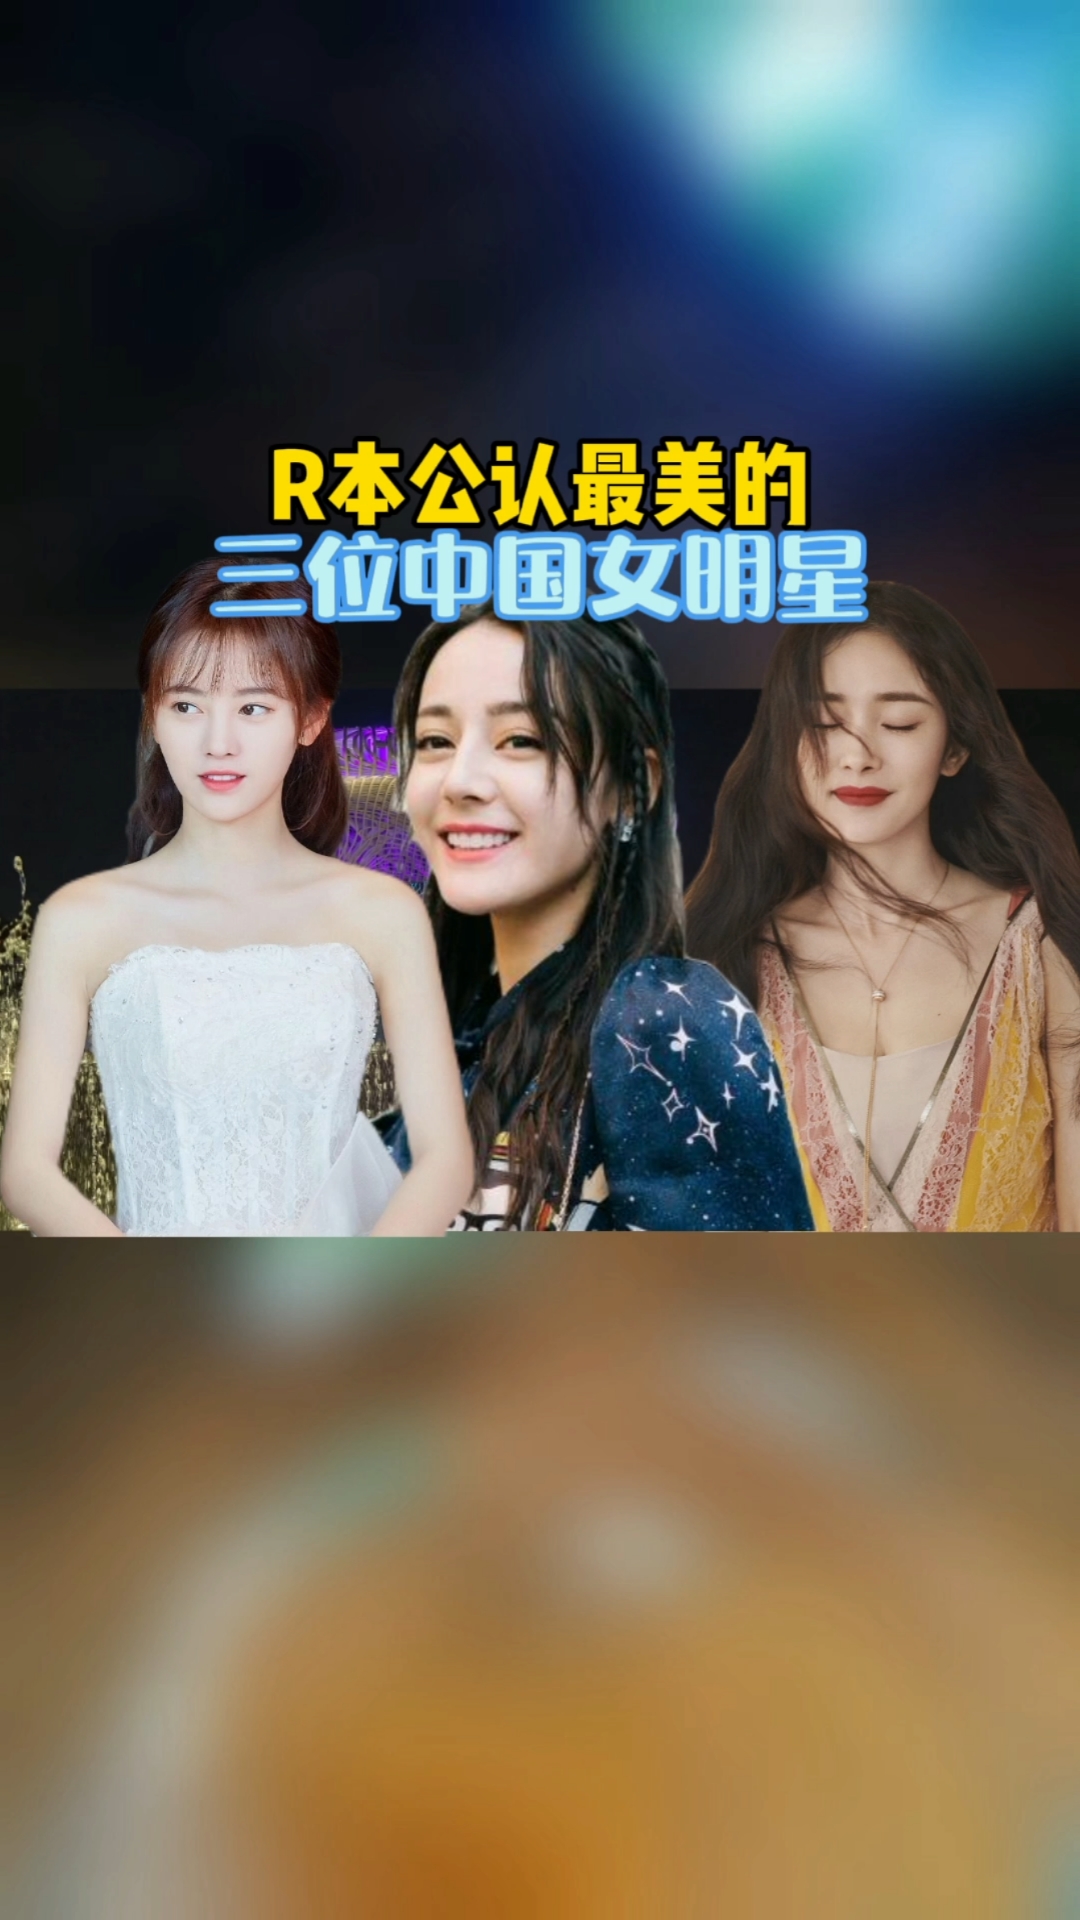 明星#日本公认最美的三位中国女明星